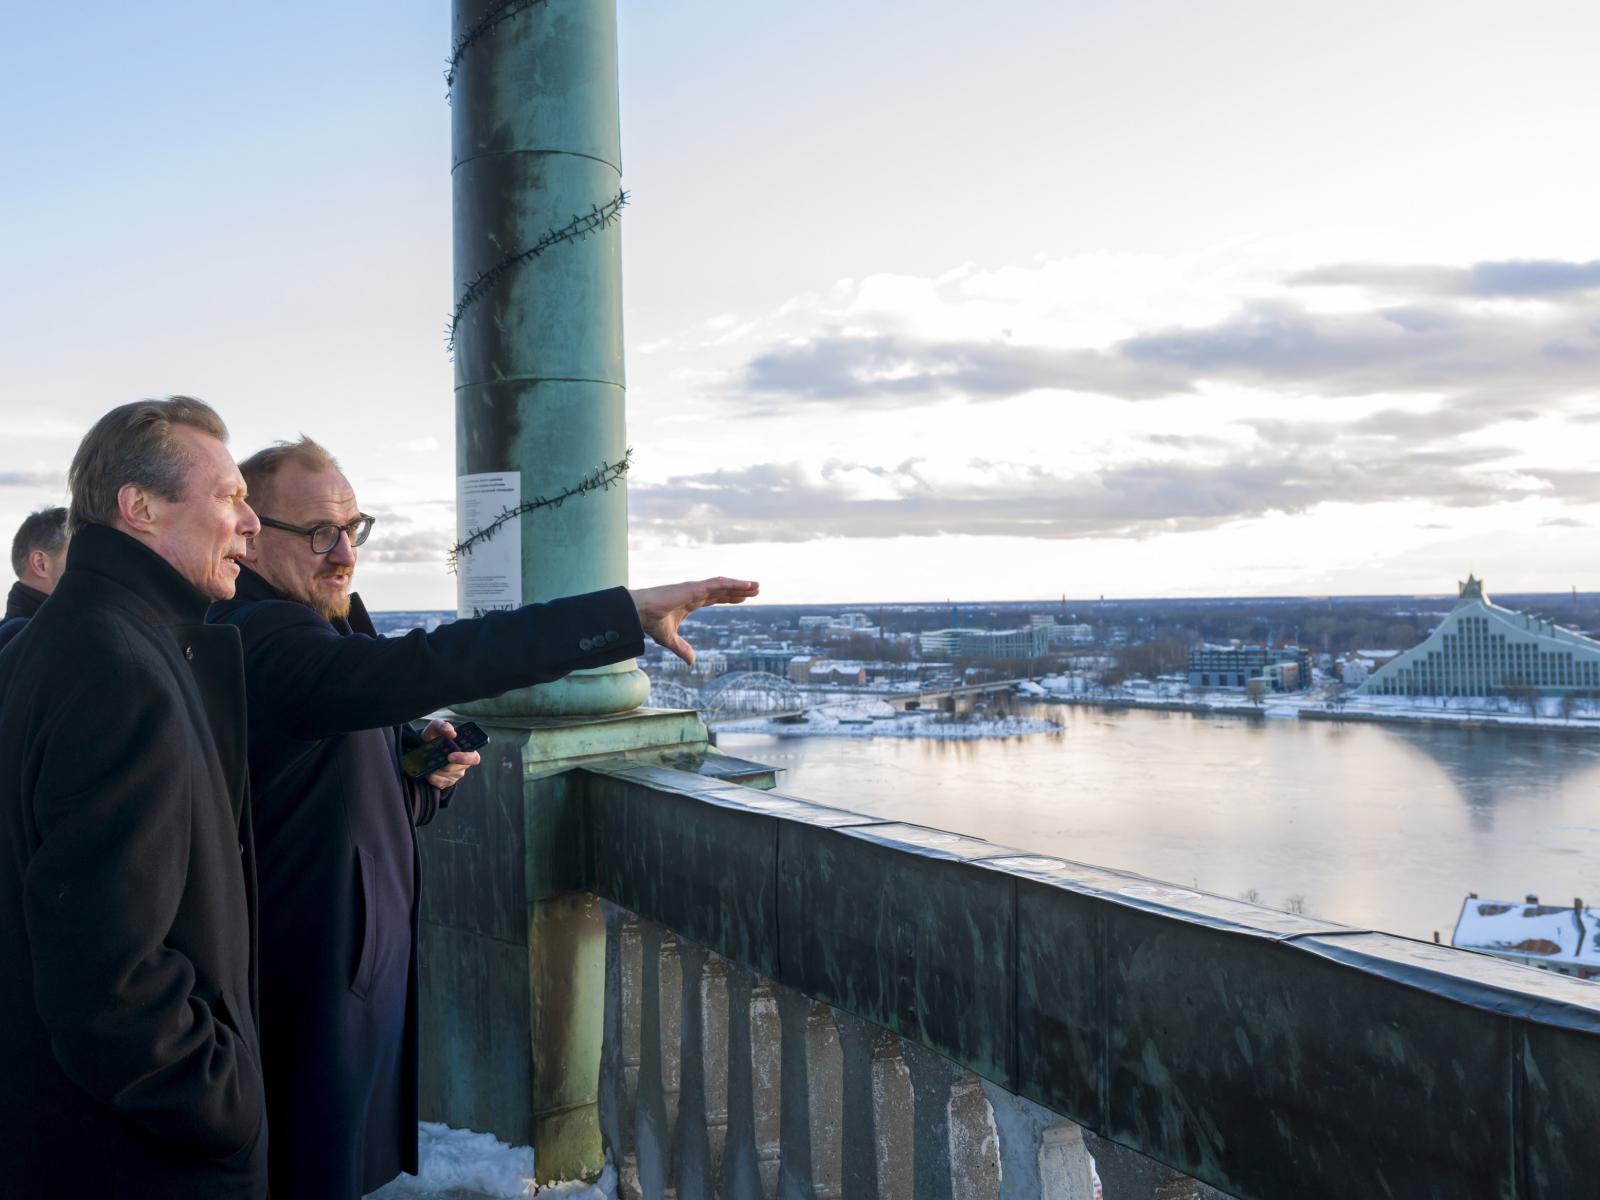 Le Grand-Duc reçoit des explications sur la ville de Riga